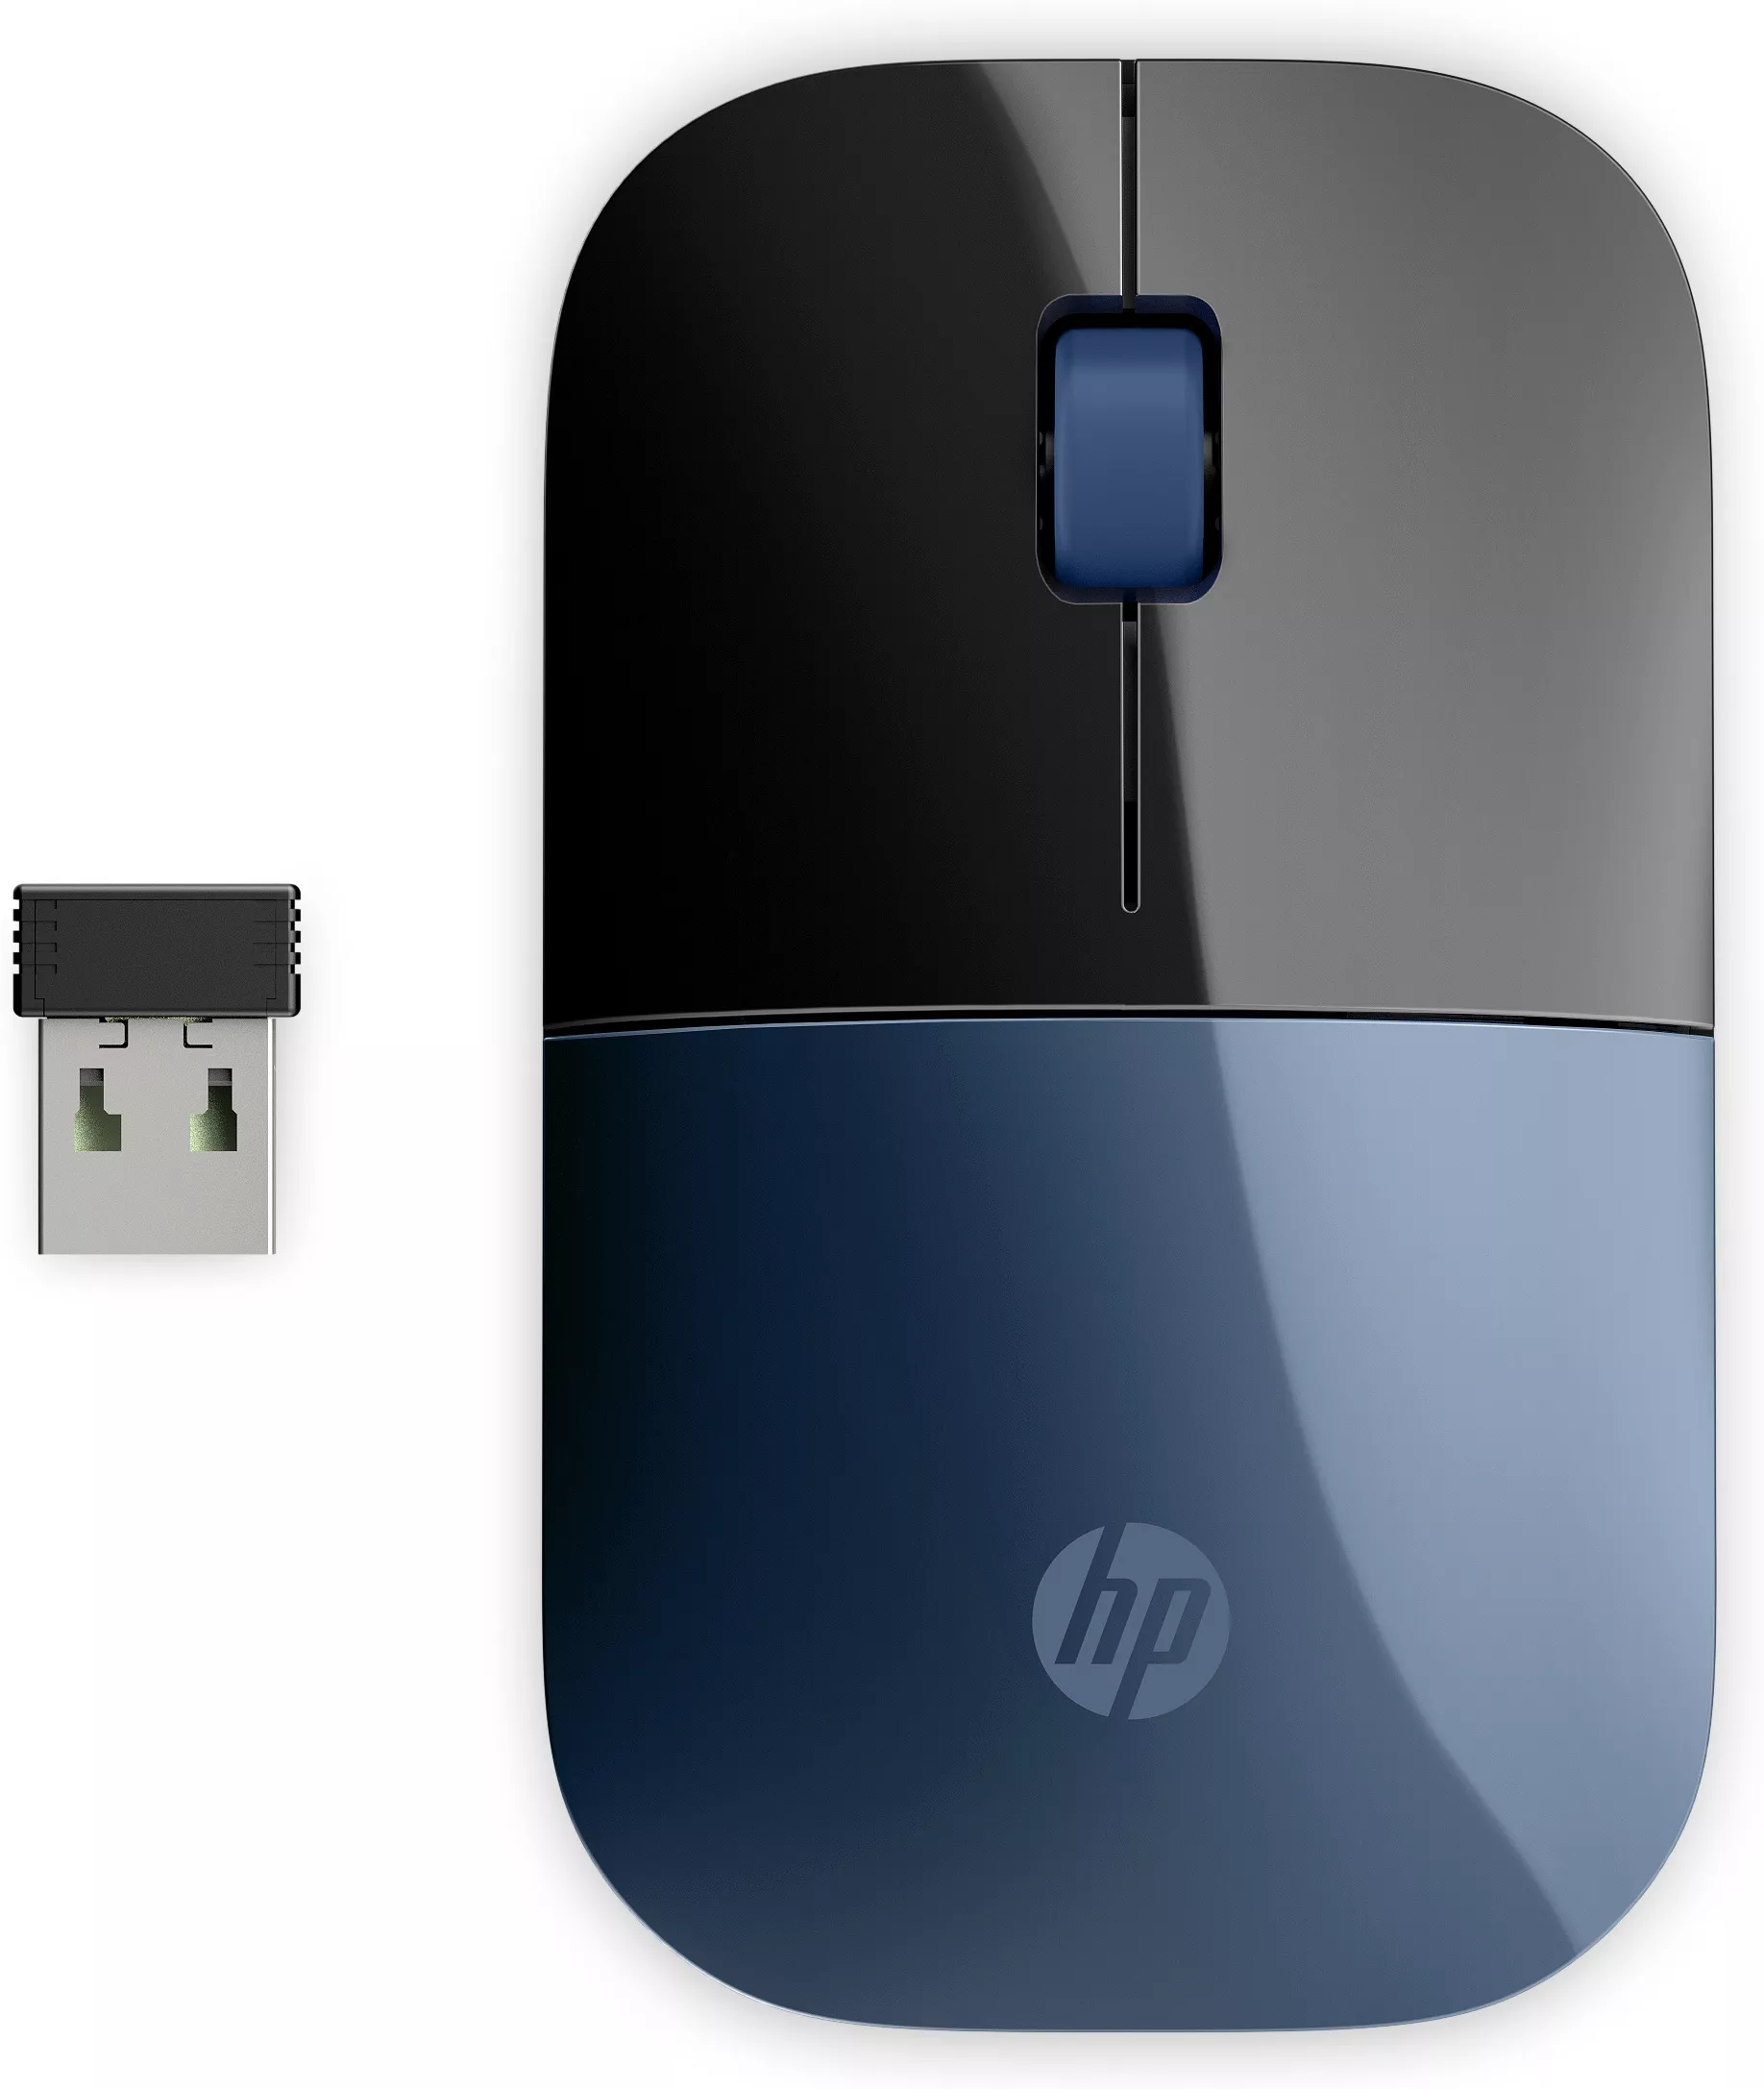 Vente Souris HP Z3700 Blue Wireless Mouse sur hello RSE